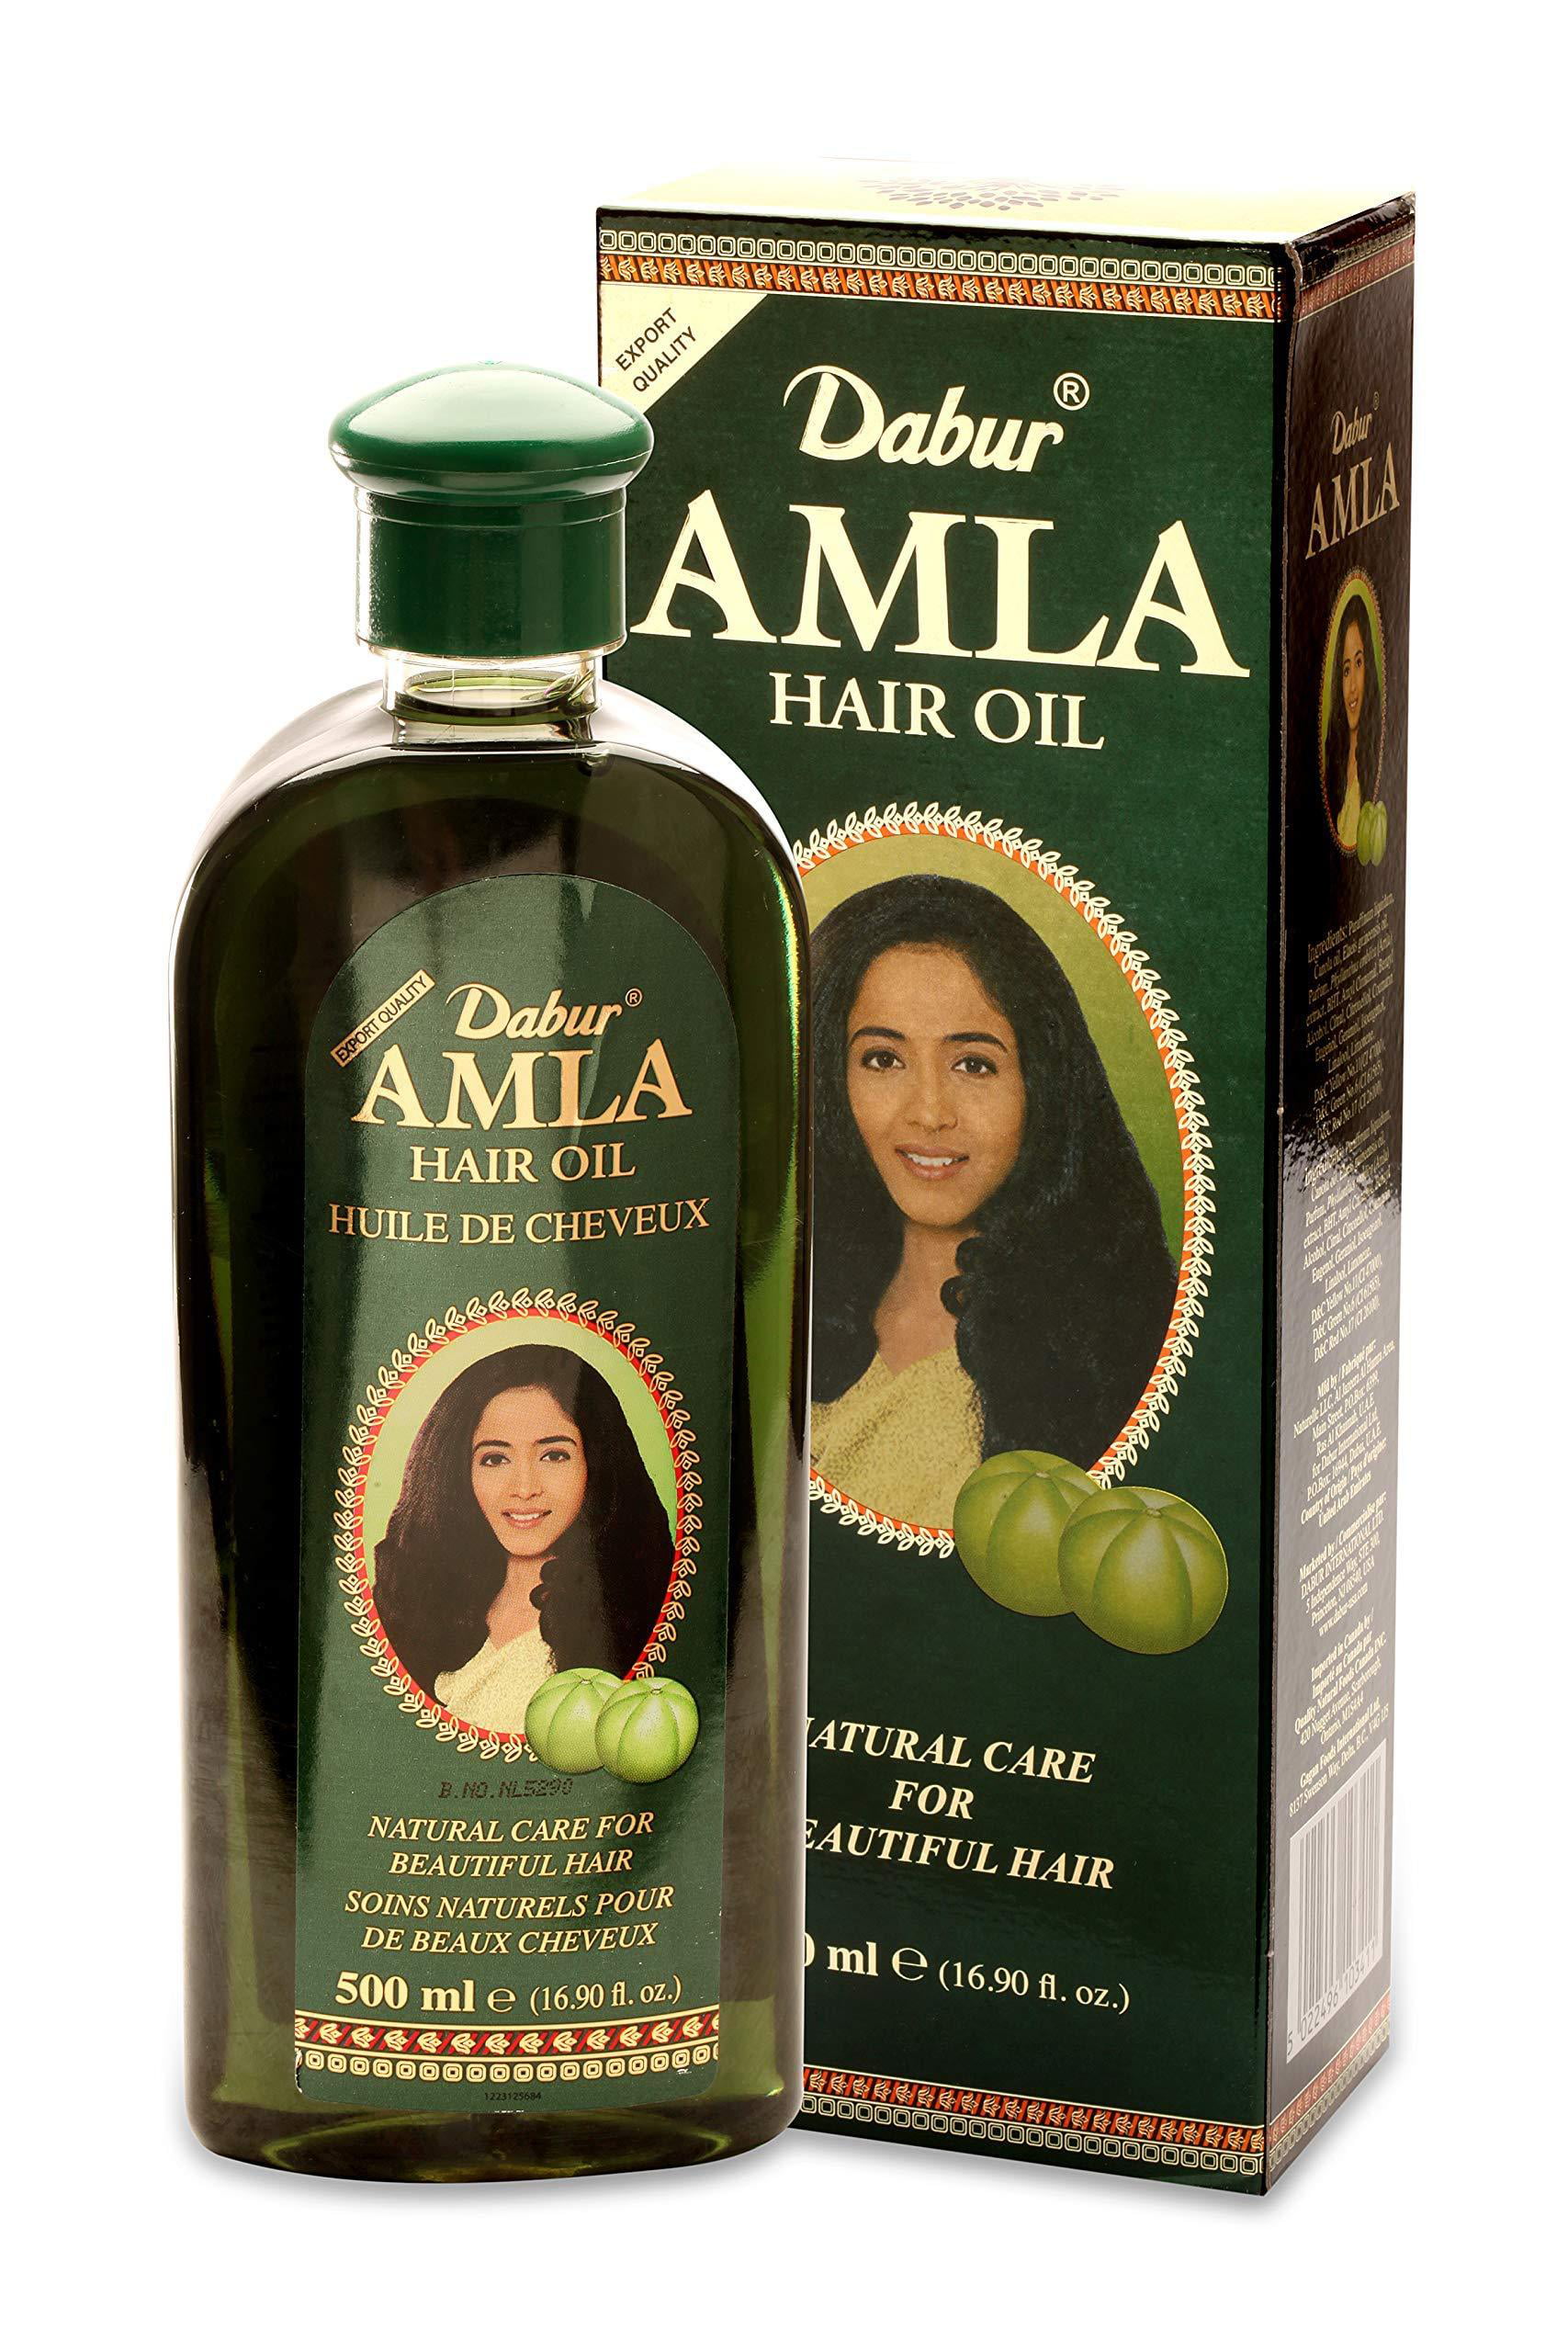 10 Days Hair Oil Amazon - 7 Days Hair Essential Oil Hair Care Oil ...